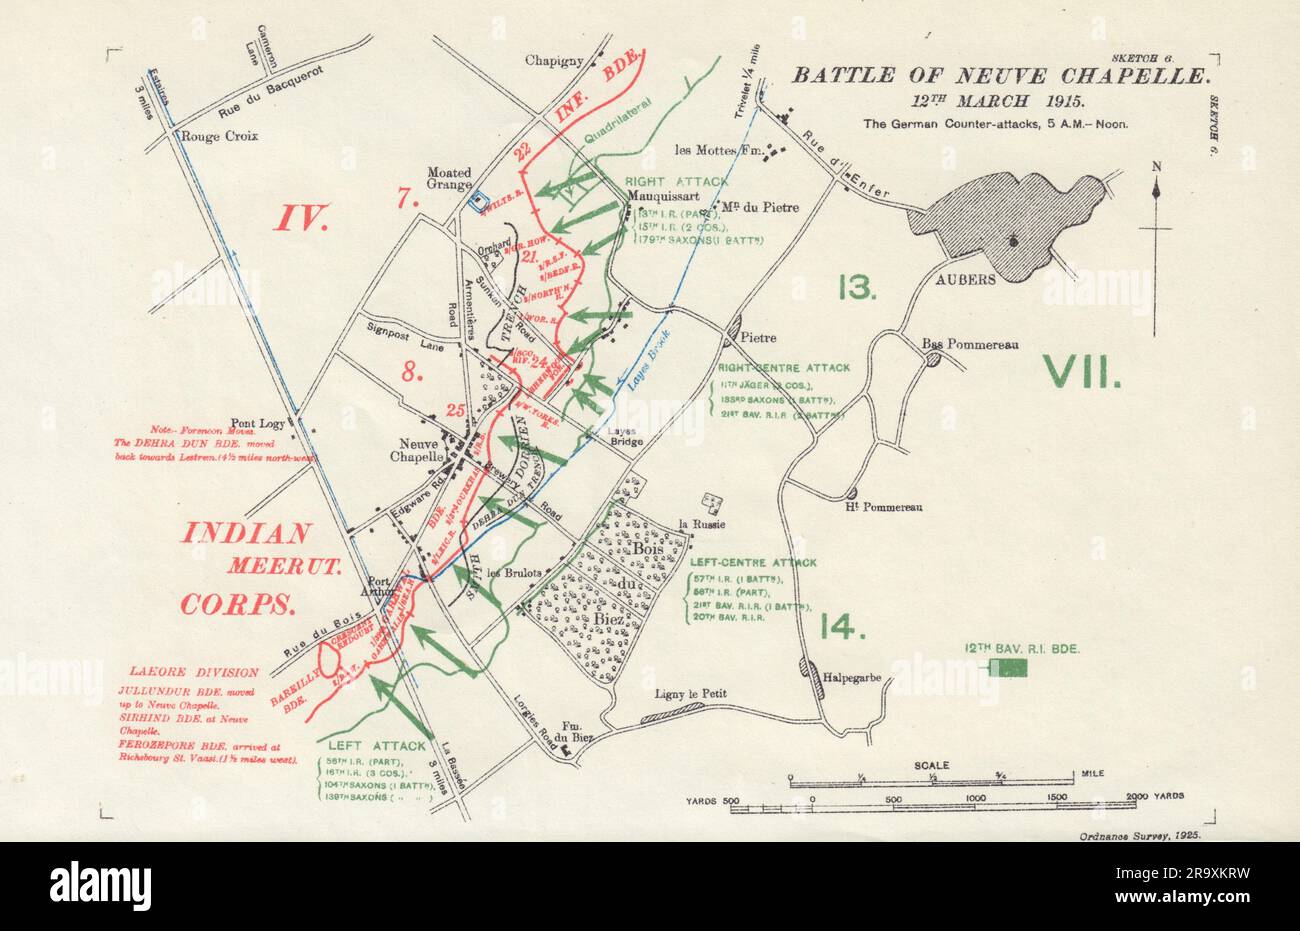 Schlacht von Neuve Chapelle, 12. März 1915, deutsche Gegenangriffe. Gräben 1927 Karte Stockfoto